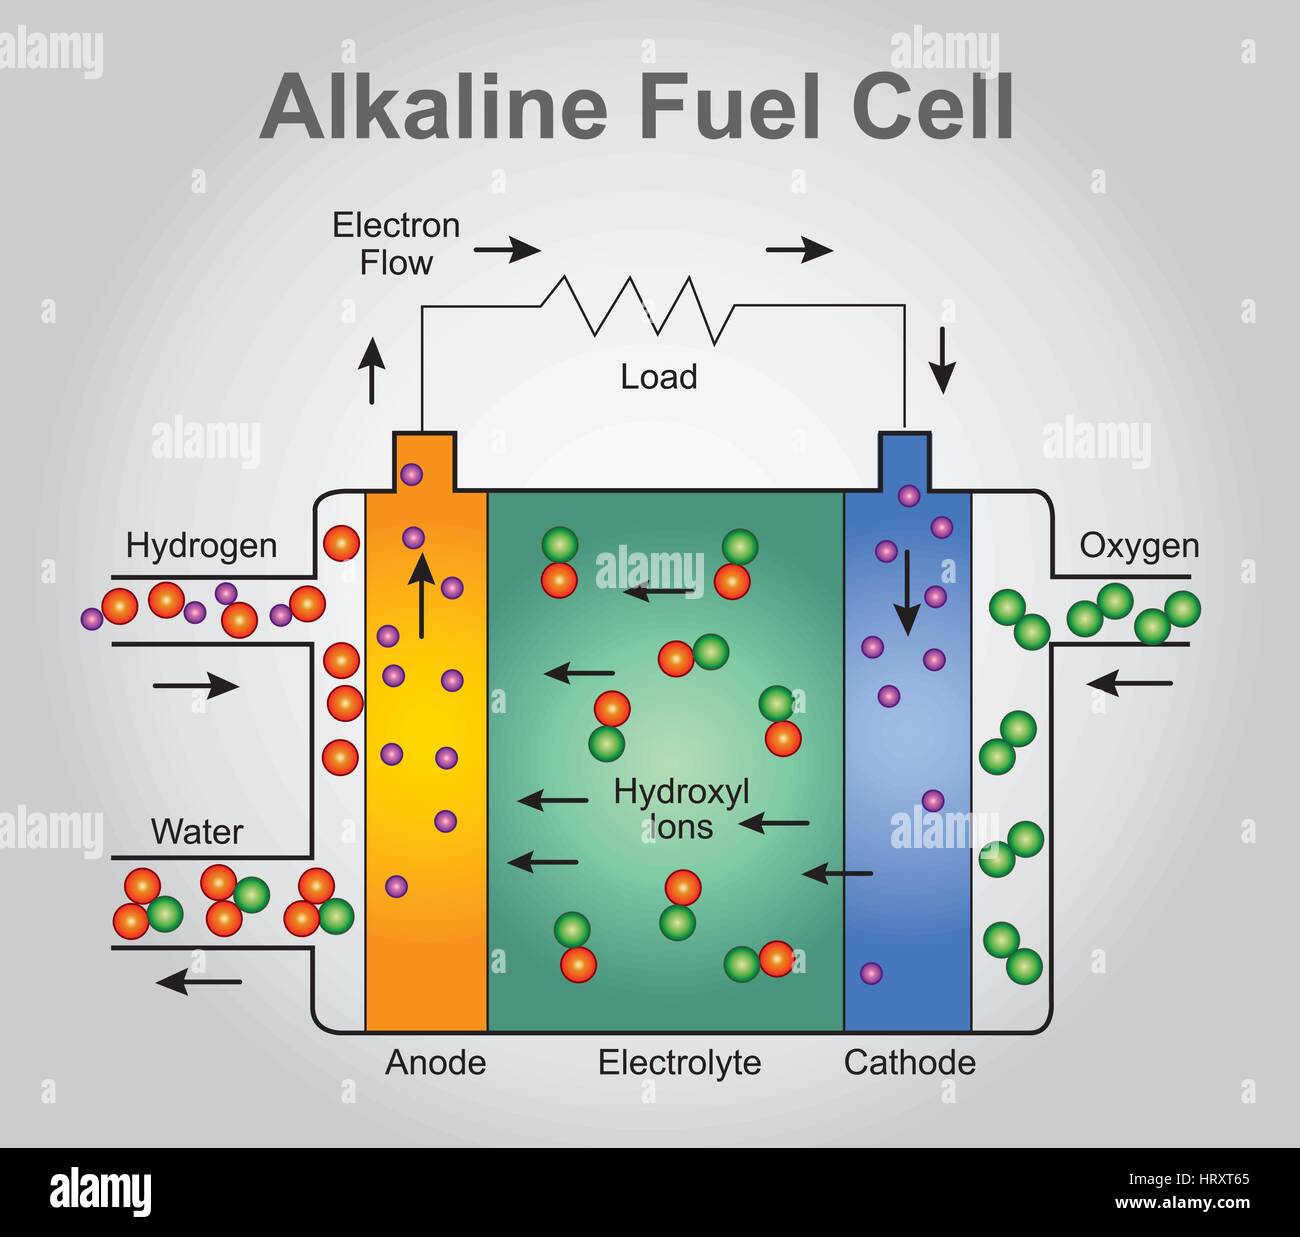 La soluzione alcalina di cella a combustibile, noto anche come la pancetta a cella di combustibile dopo il suo inventore britannico, Thomas Francis Bacon, è uno dei più sviluppati cella a combustibile tec Illustrazione Vettoriale